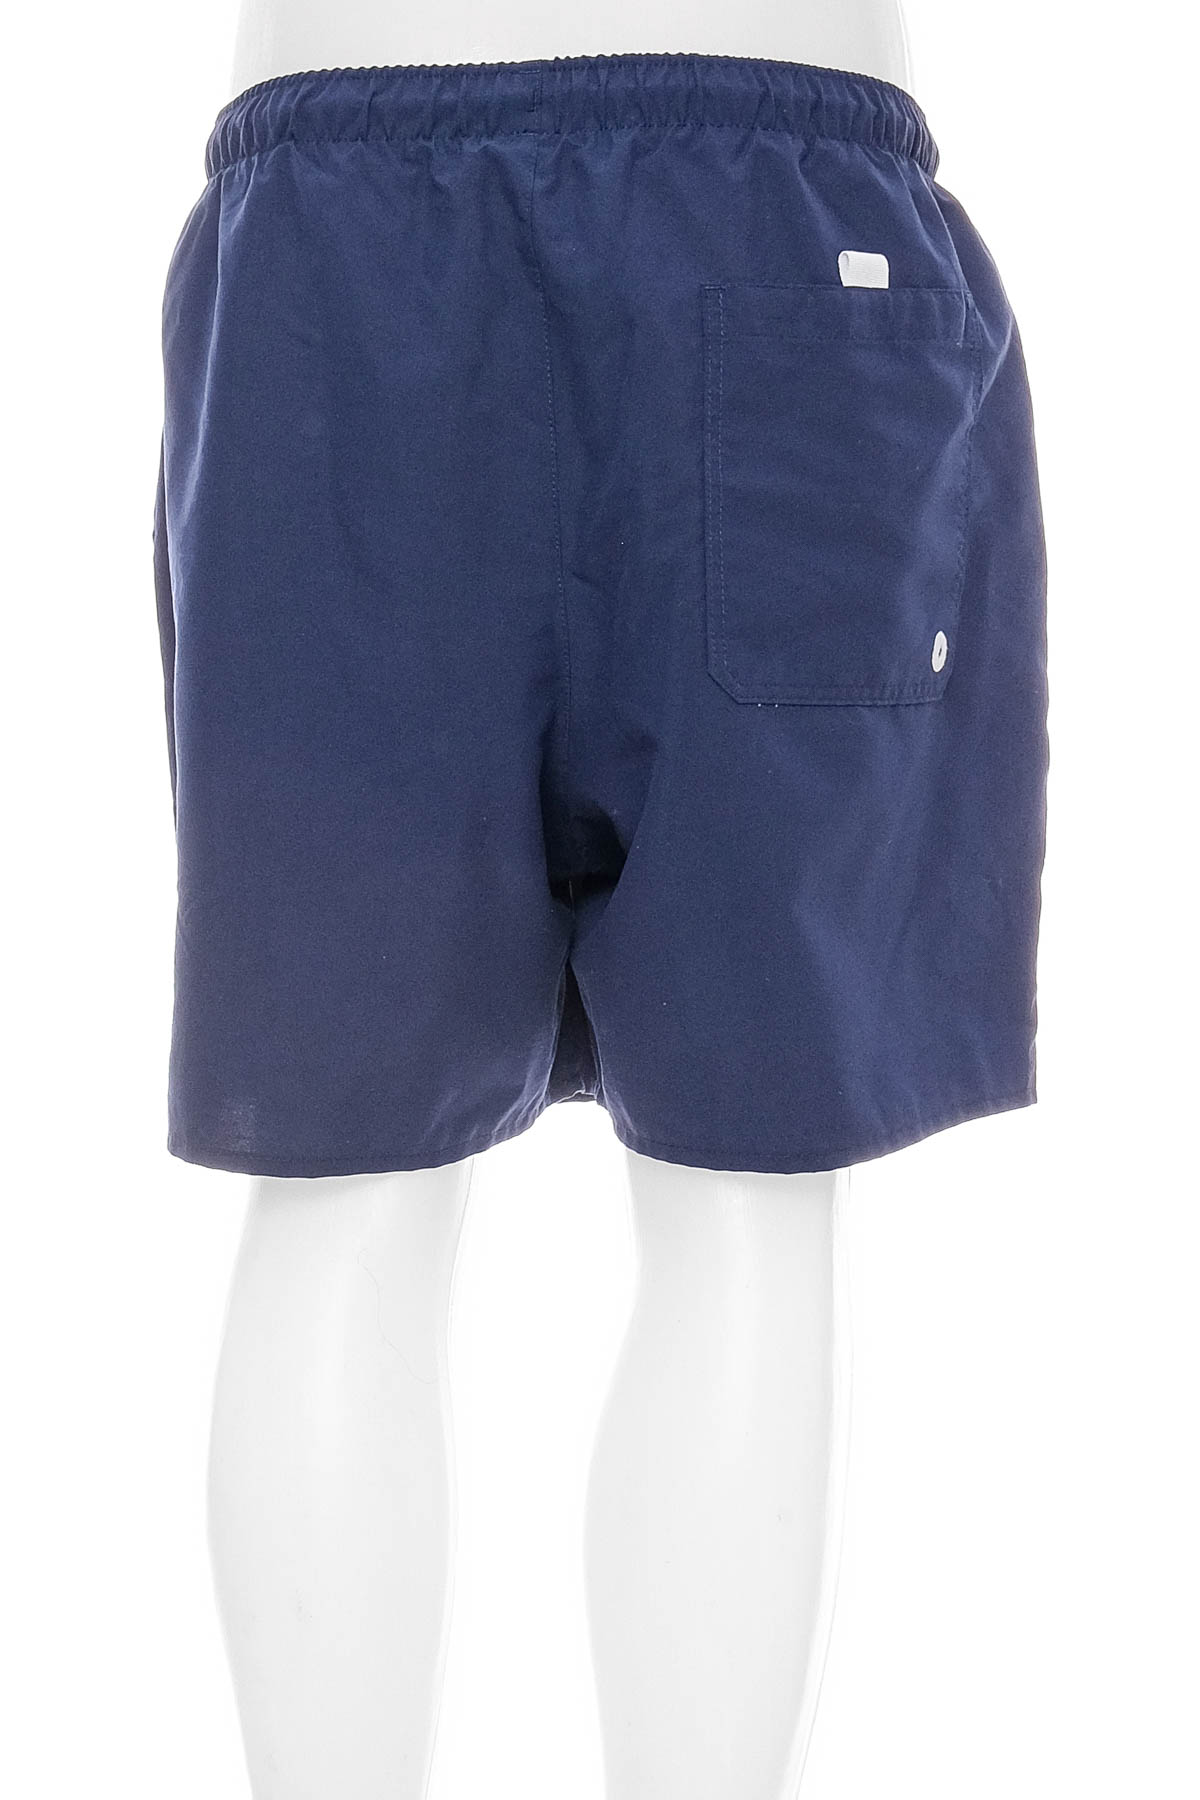 Men's shorts - OLAIAN - 1